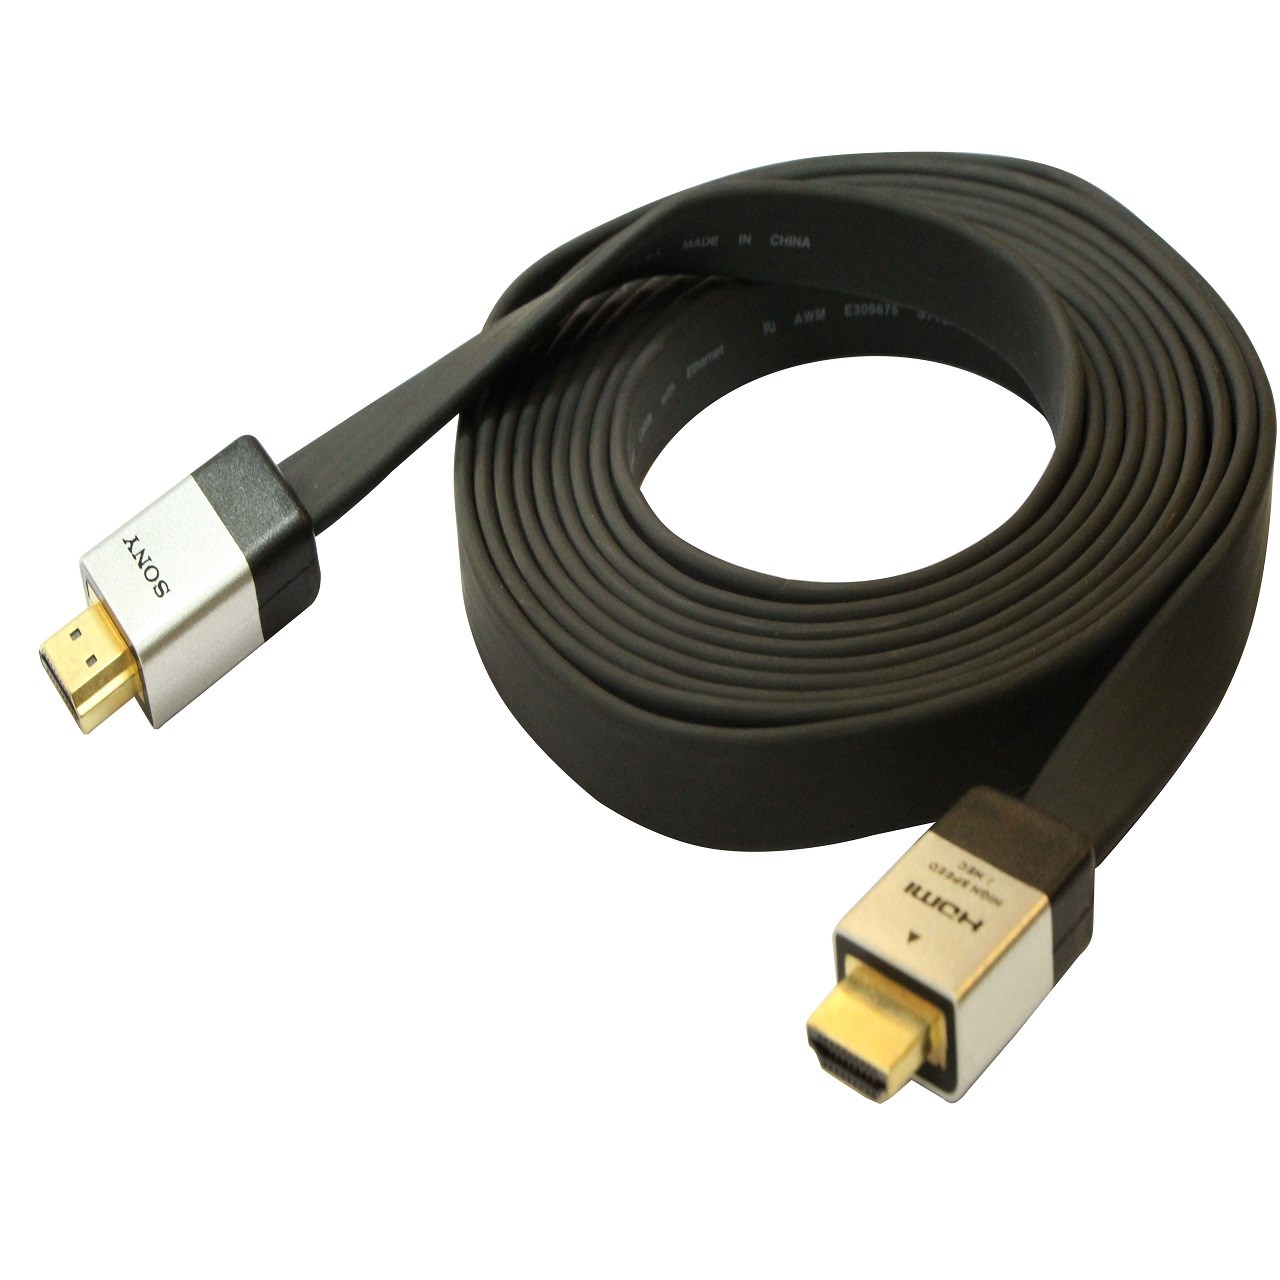 کابل HDMI سونی اصلی با طول 2 متر